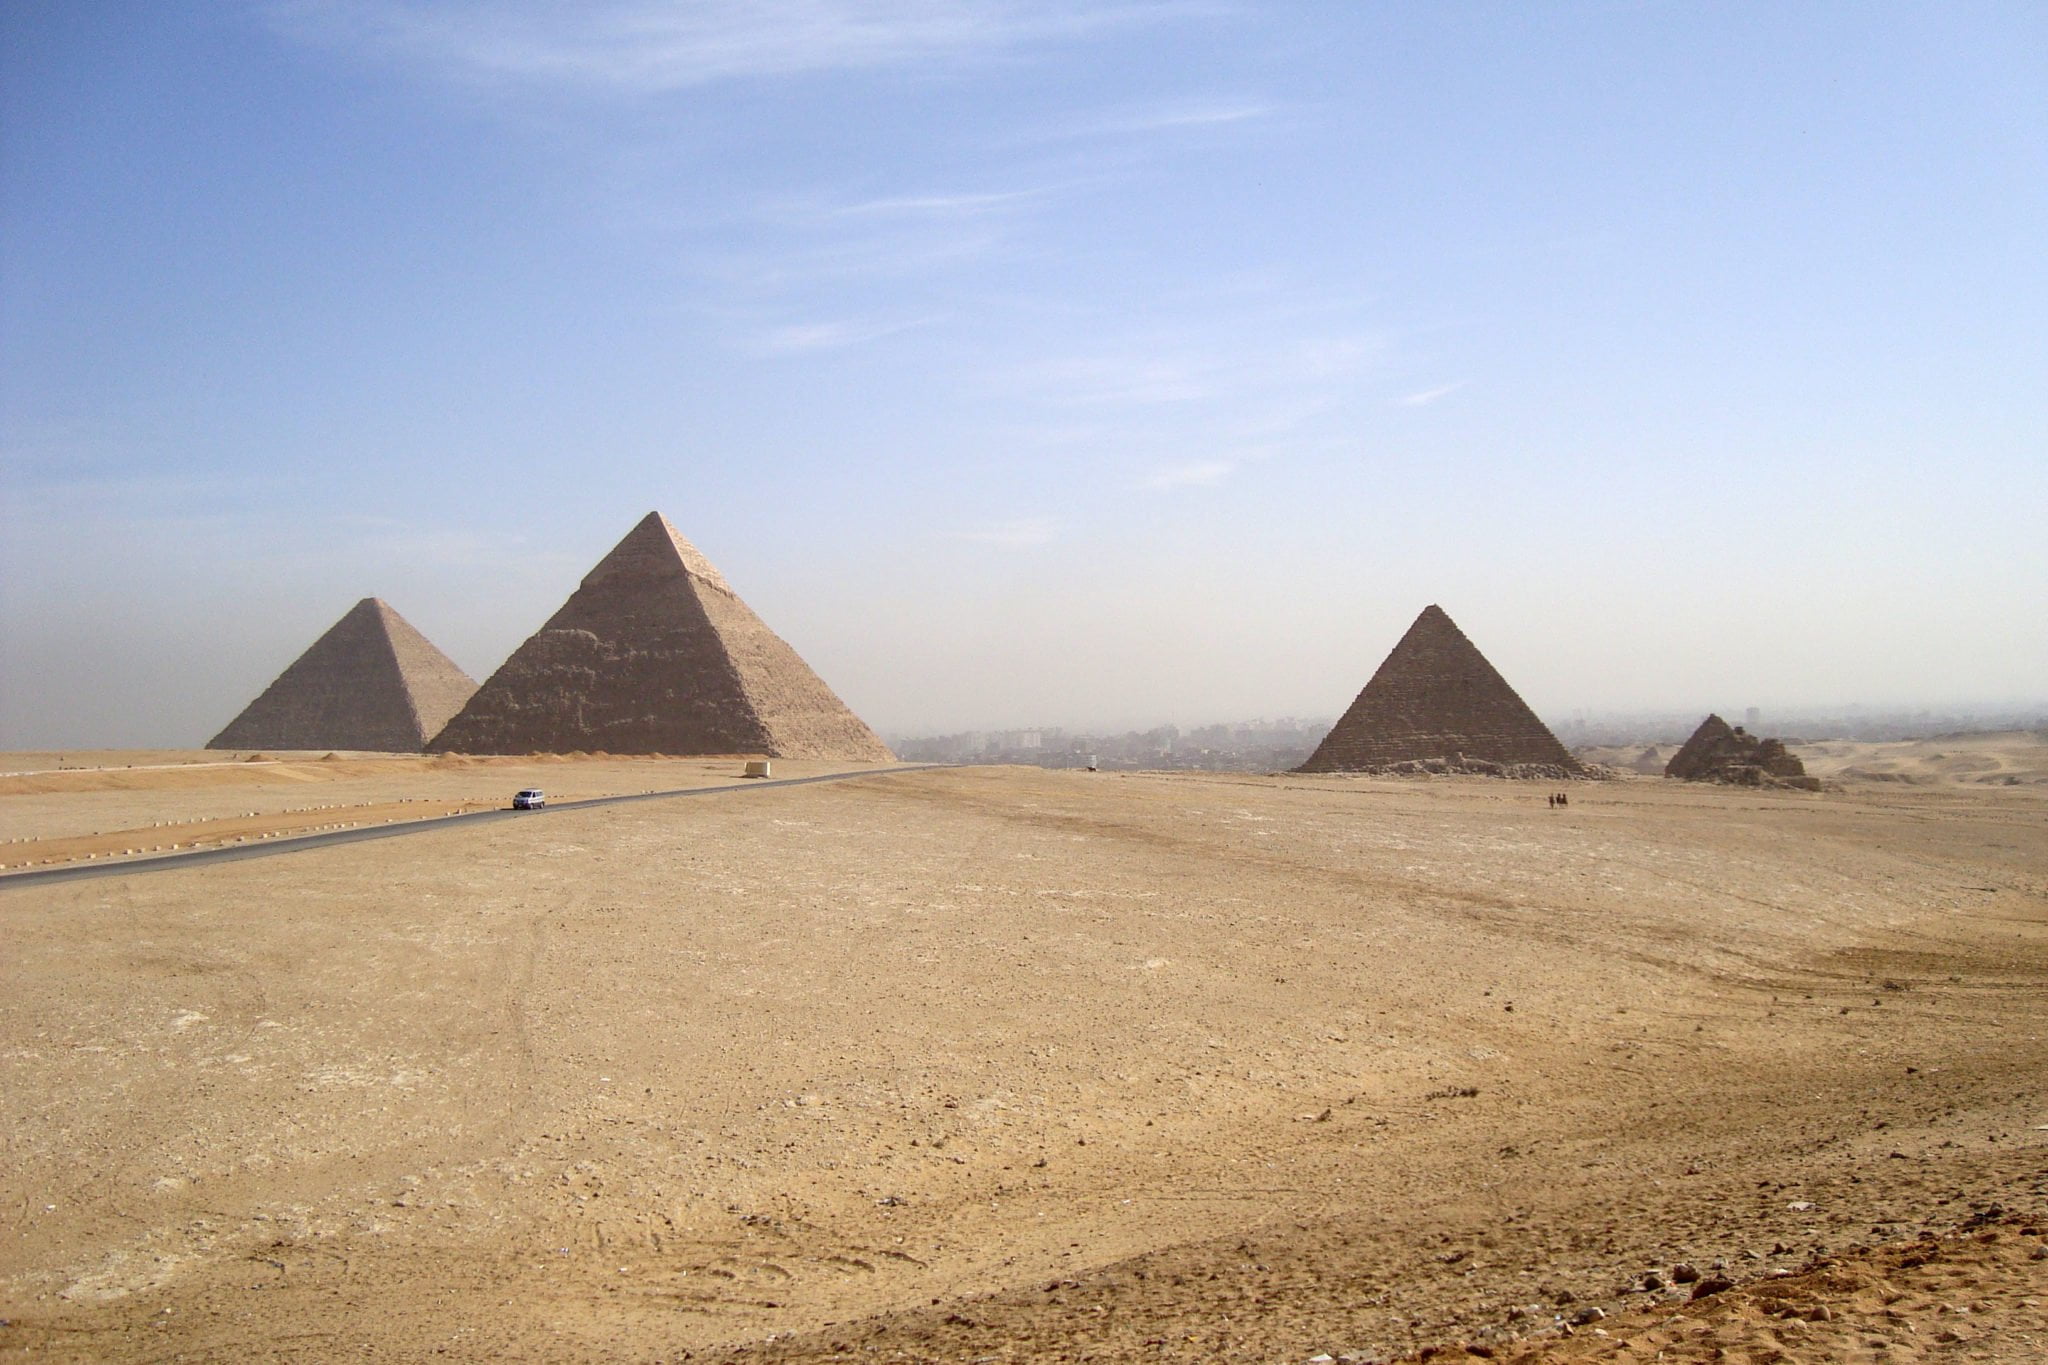 Piramidi egizie